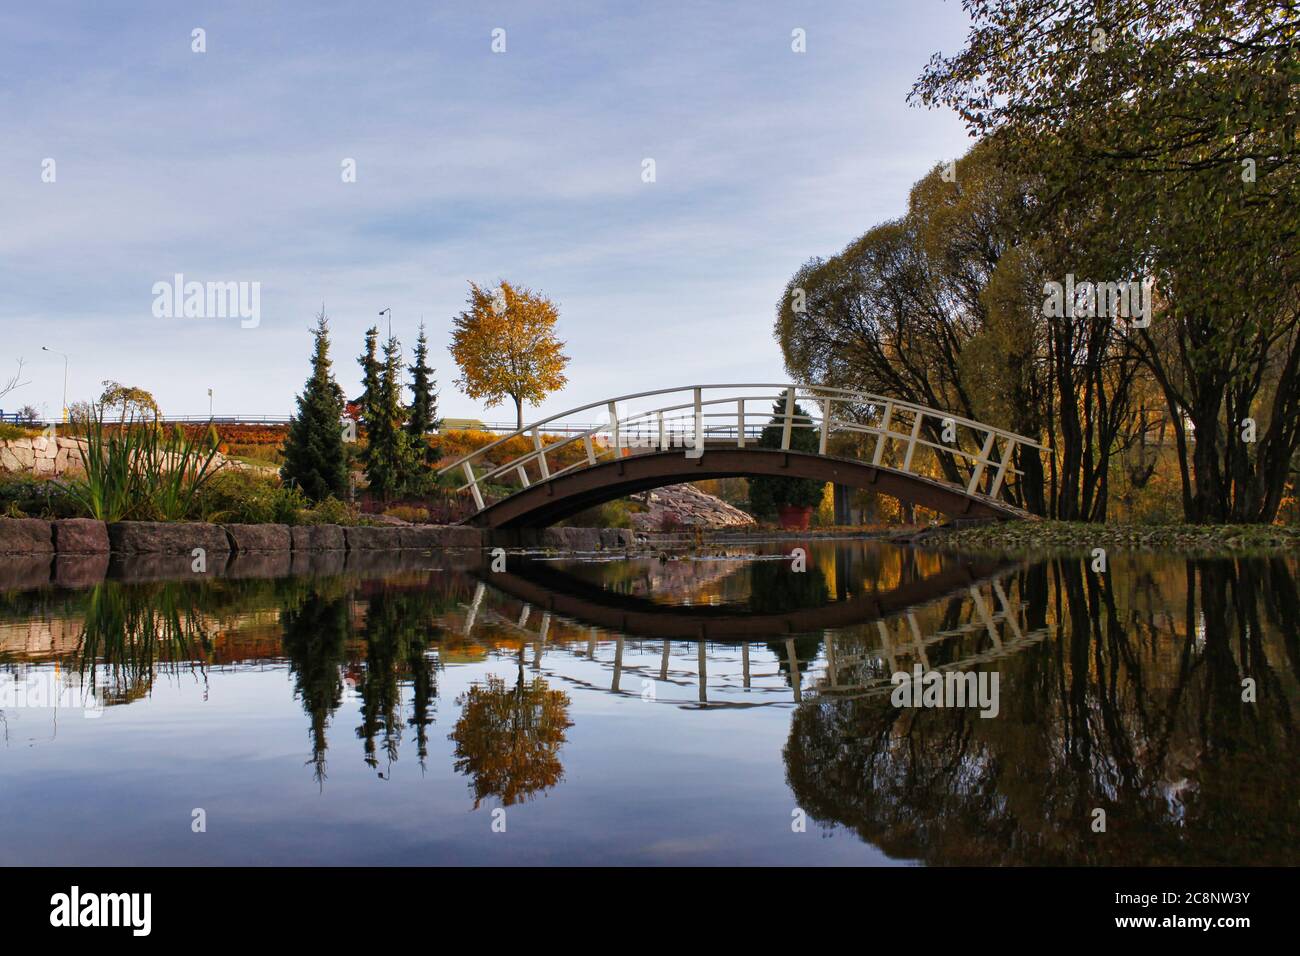 Landschaft von arced Brücke über Teich mit Reflexionen auf Wasser. Standort Kotka, Finnland Stockfoto